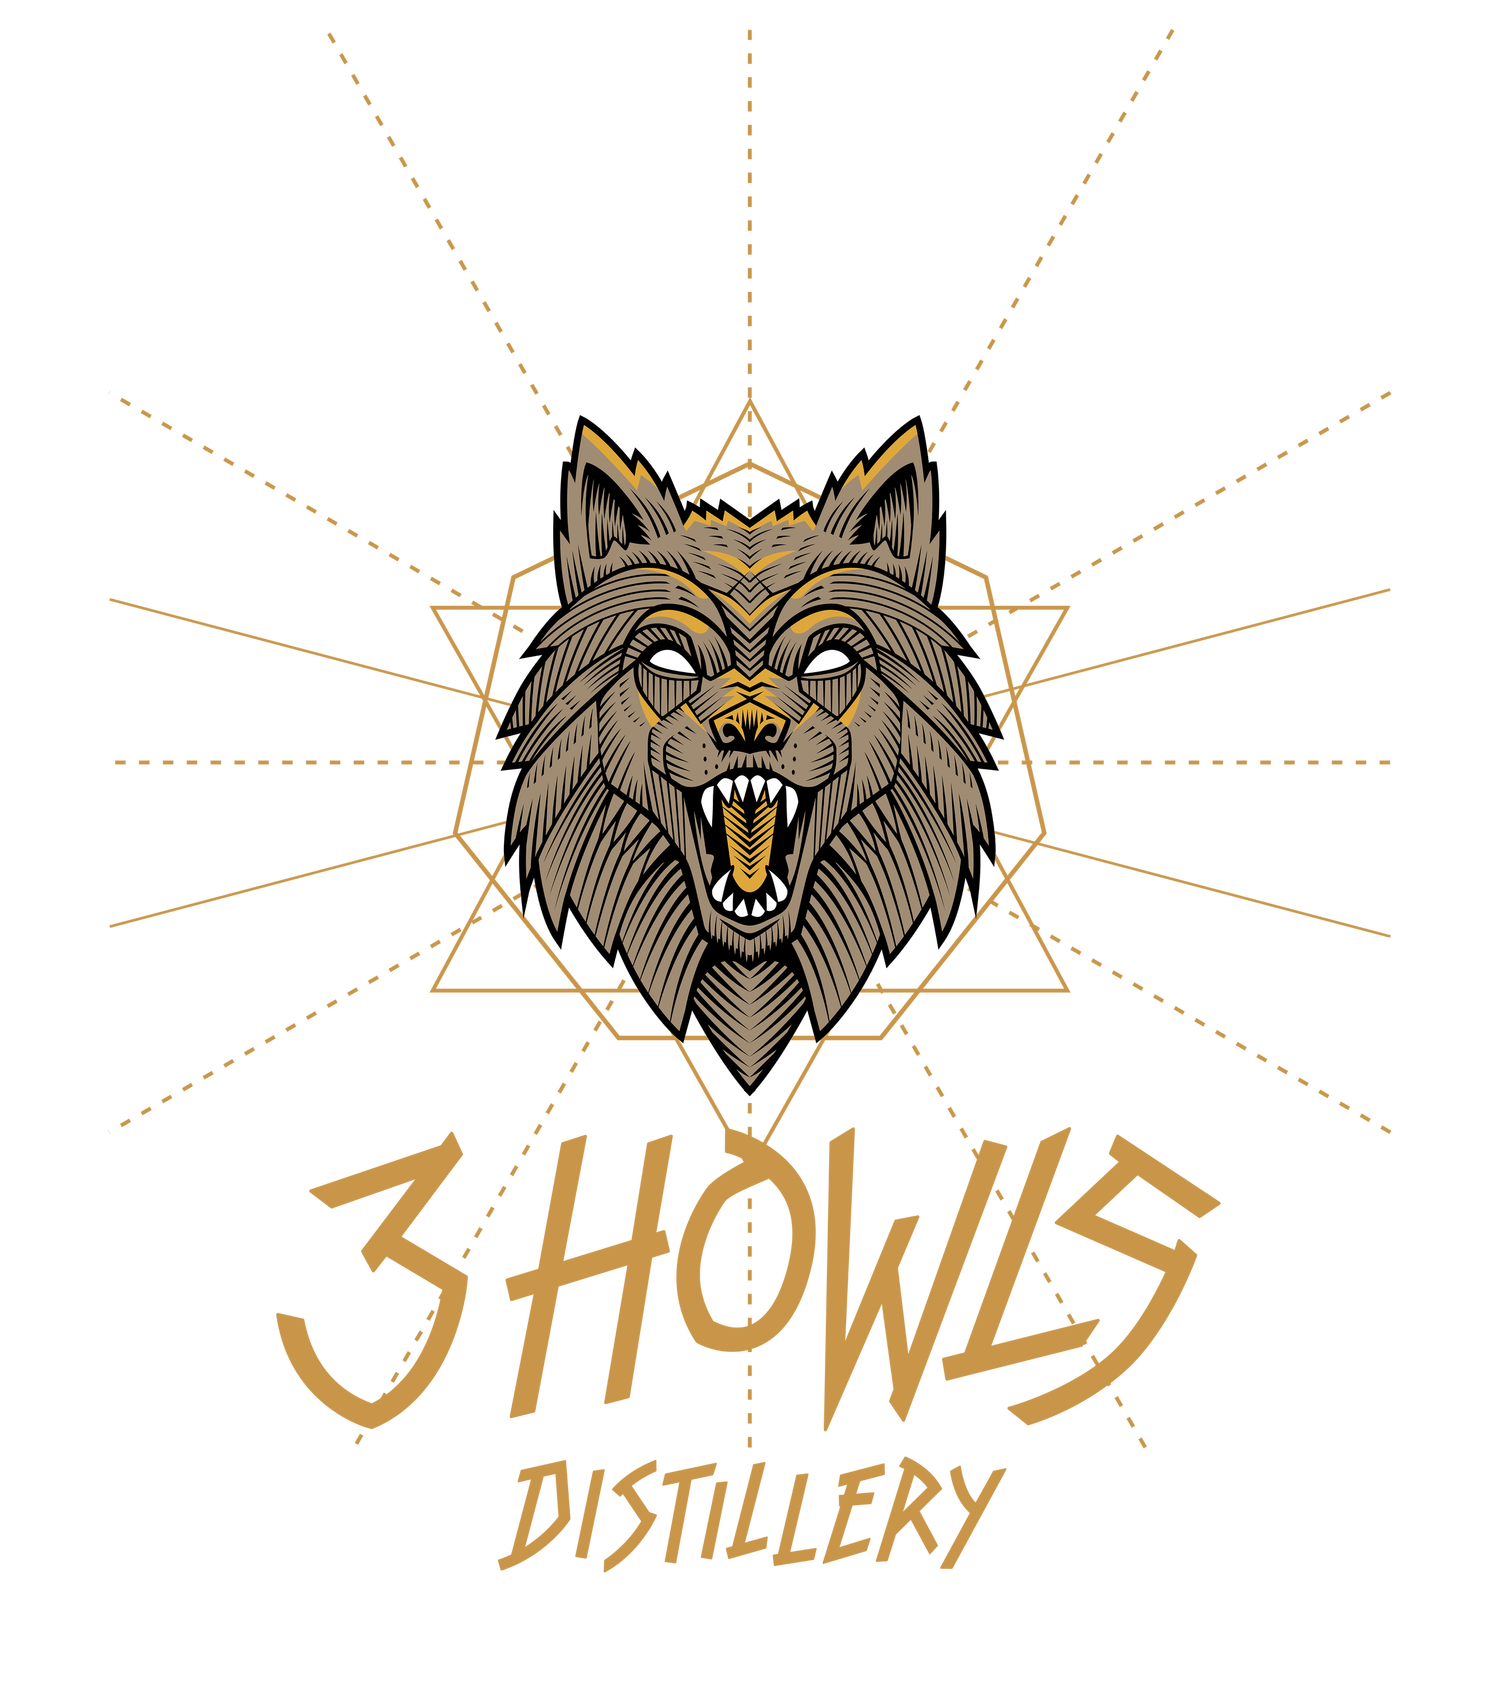 3 Howls Distillery